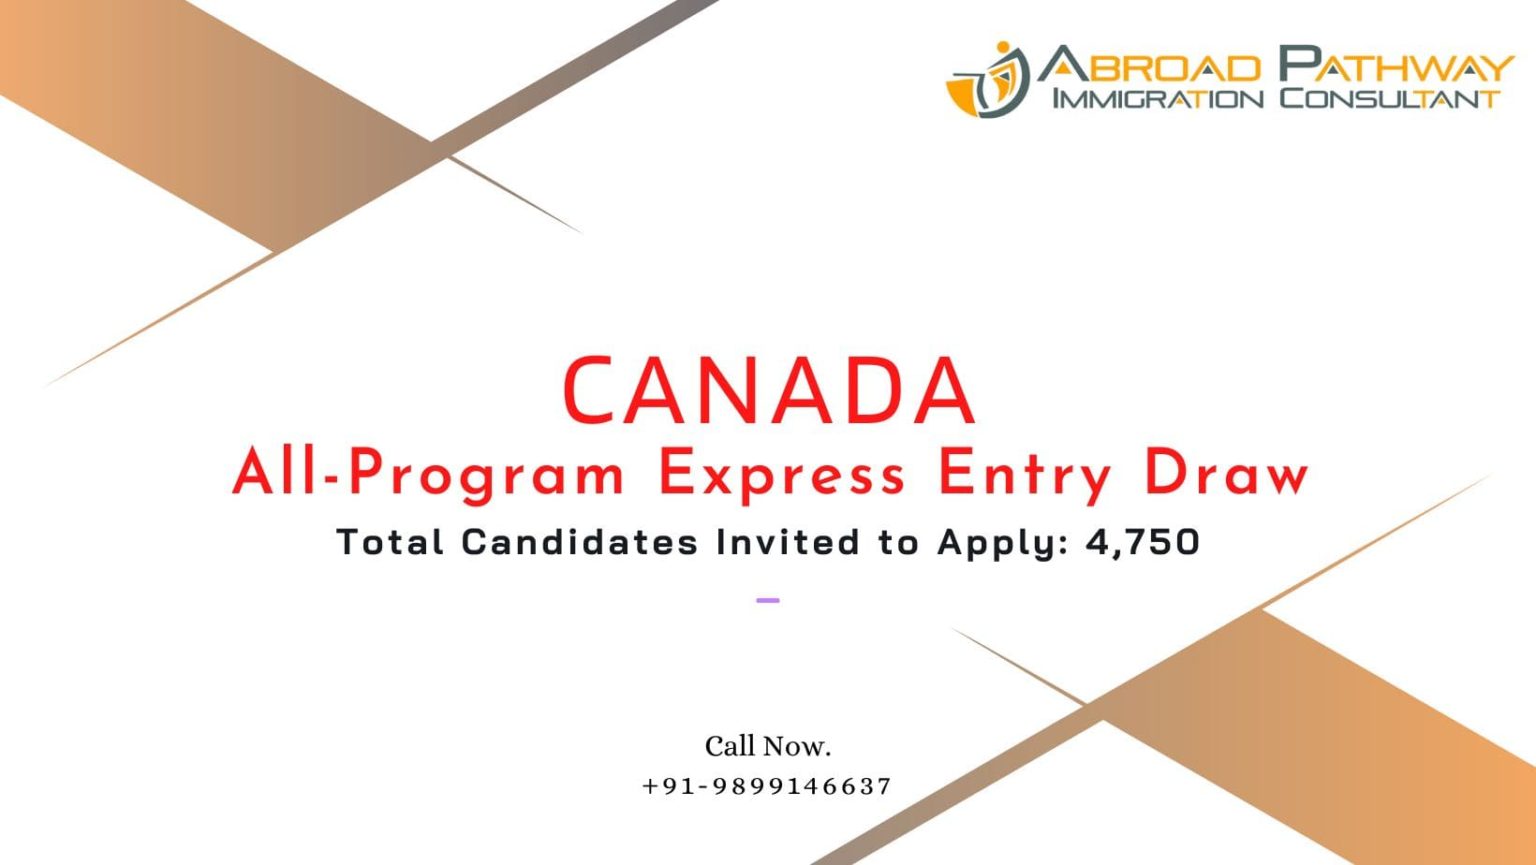 Latest round of invitations Canada invites 4750 candidates